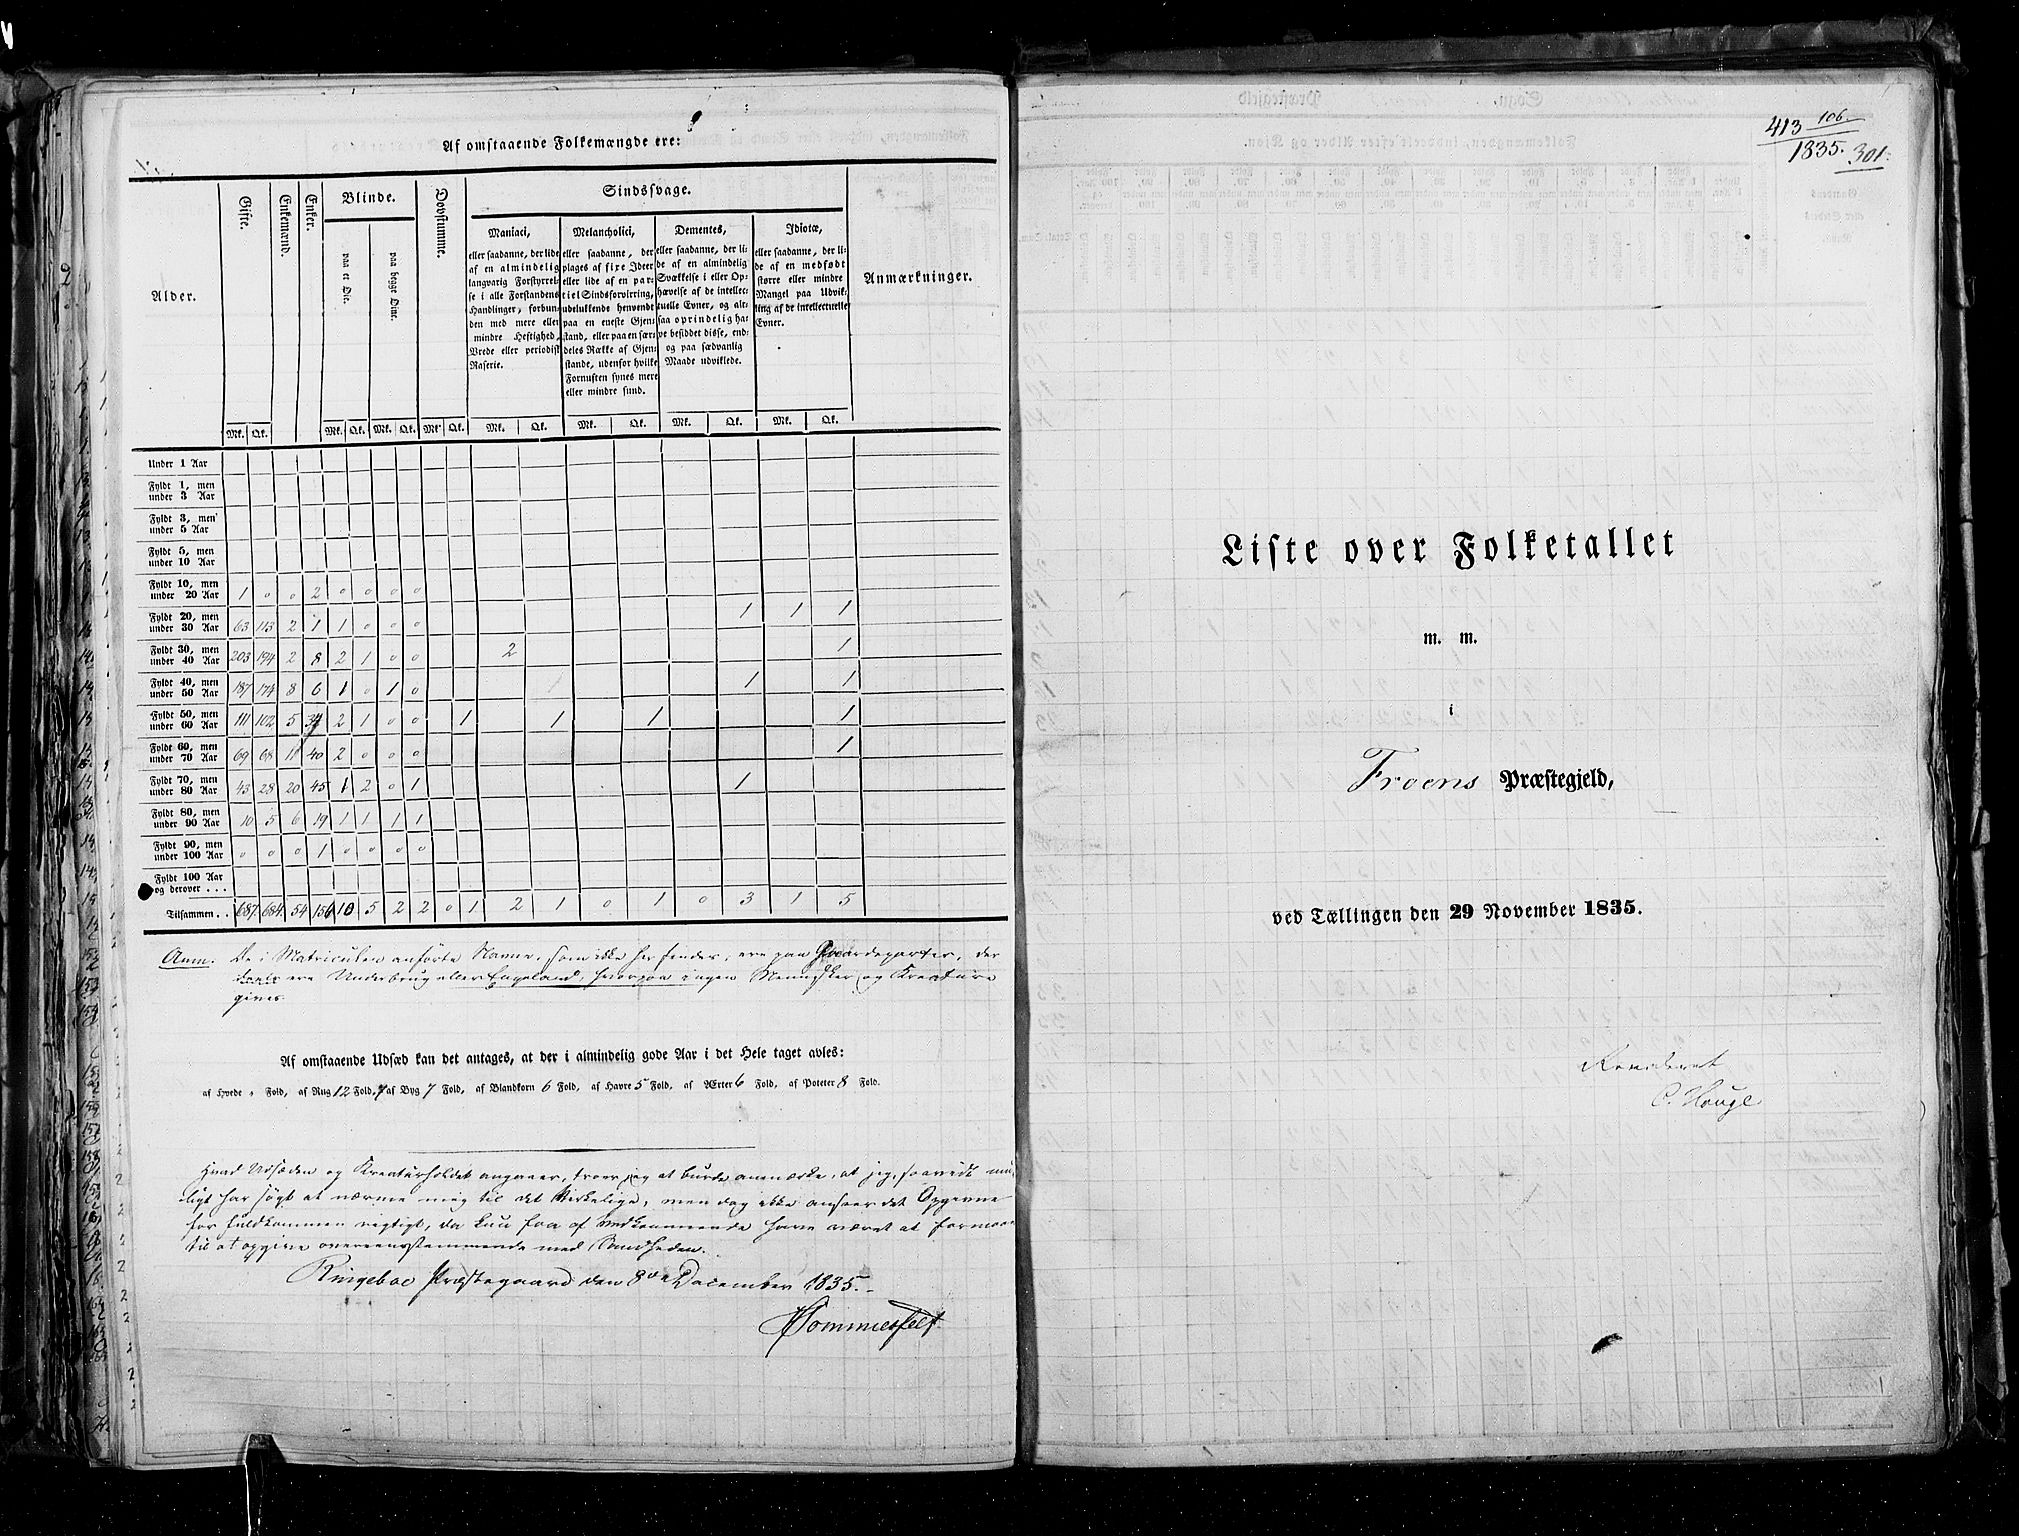 RA, Census 1835, vol. 3: Hedemarken amt og Kristians amt, 1835, p. 301